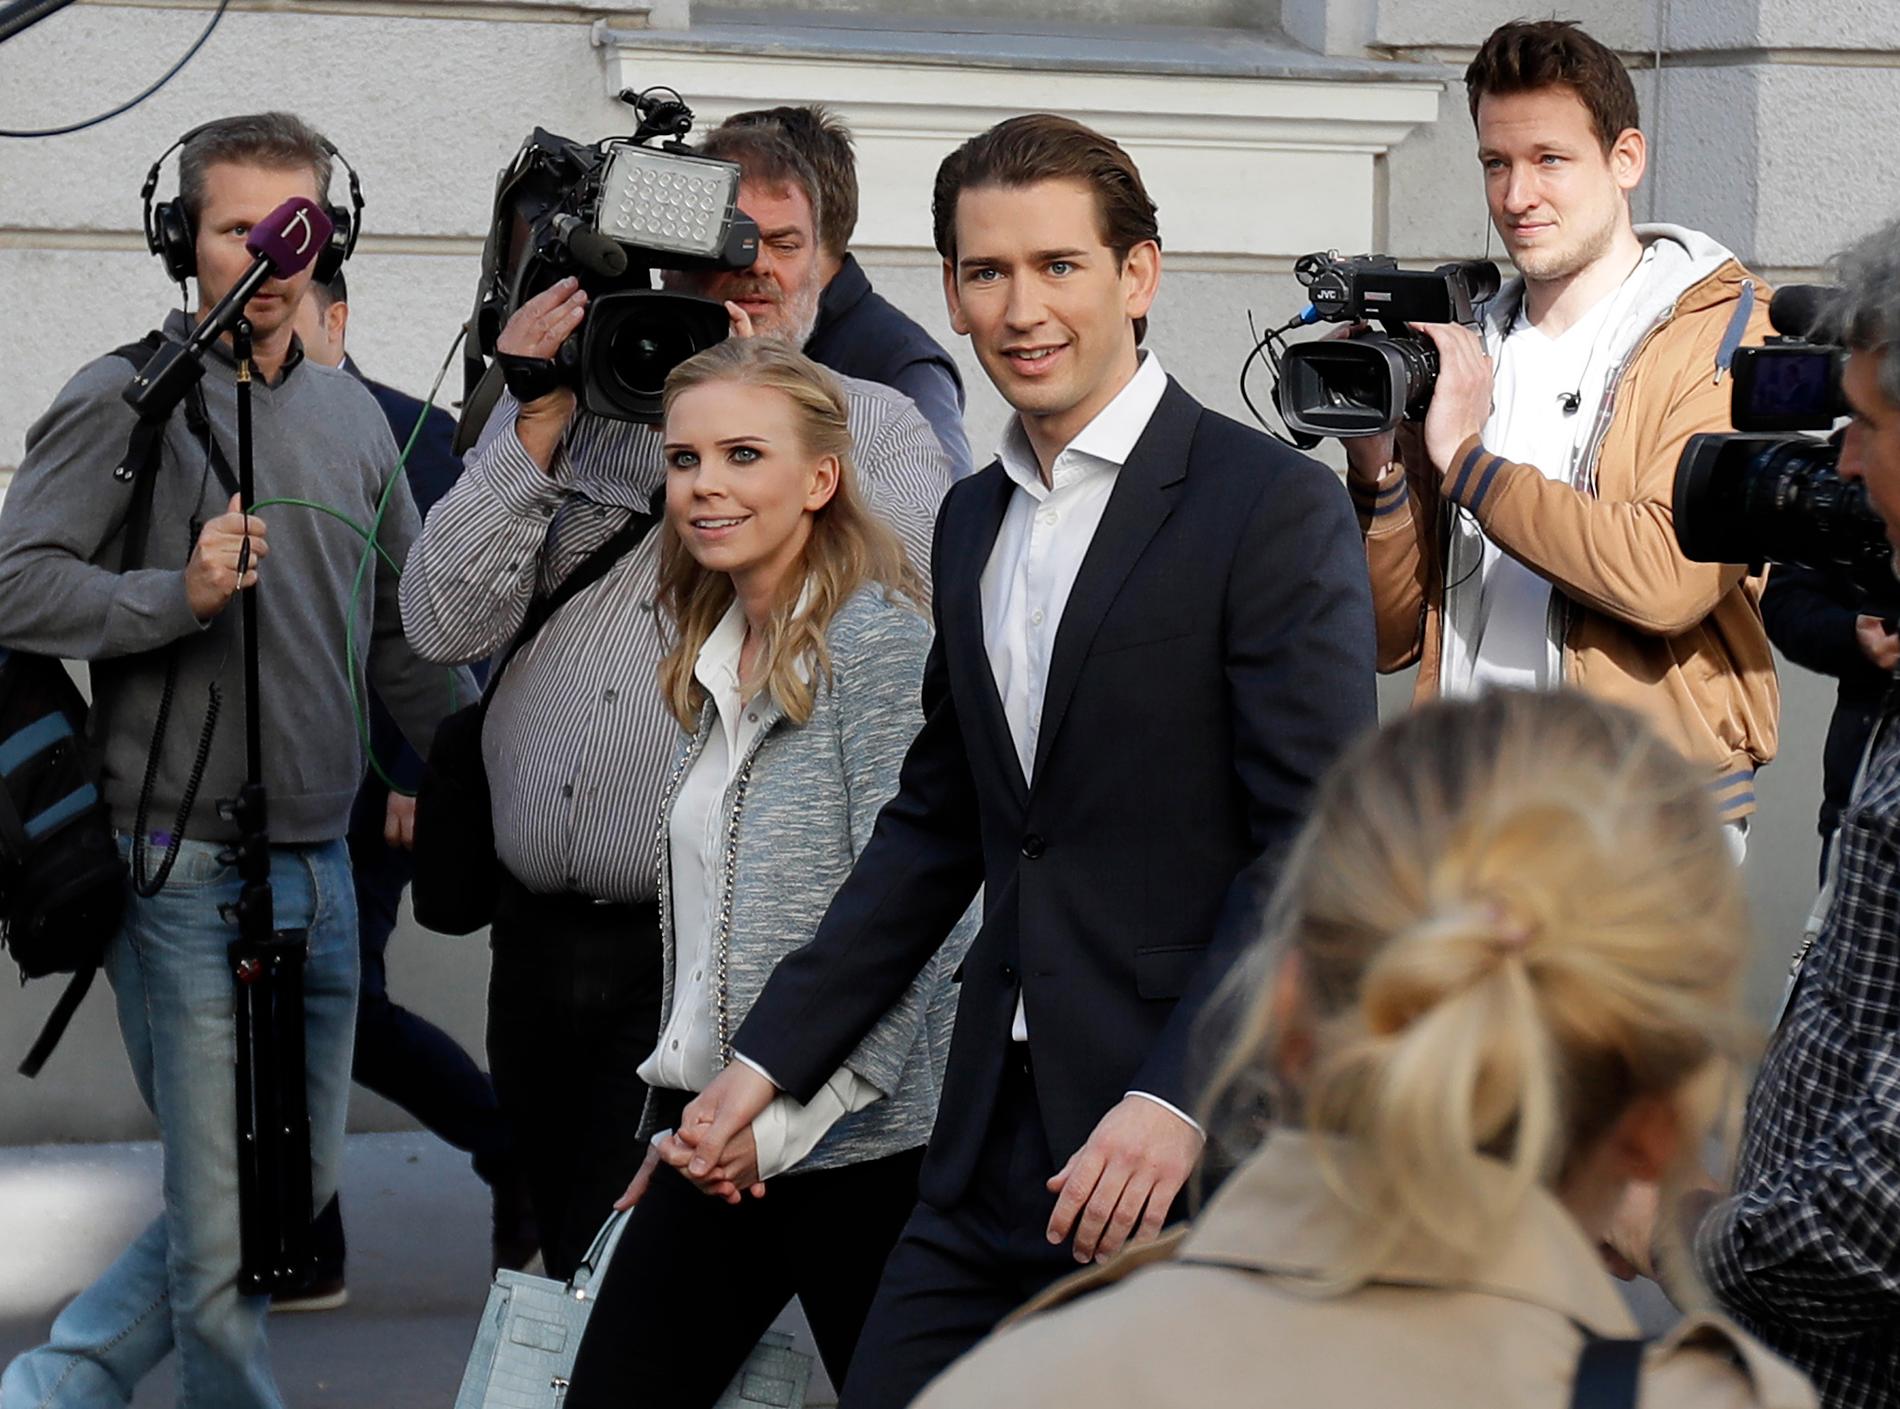 Sebastian Kurz, utrikesminister och ÖVP-ledare, lade sin röst i Wien, tillsammans med sin flickvän Susanne Thier.